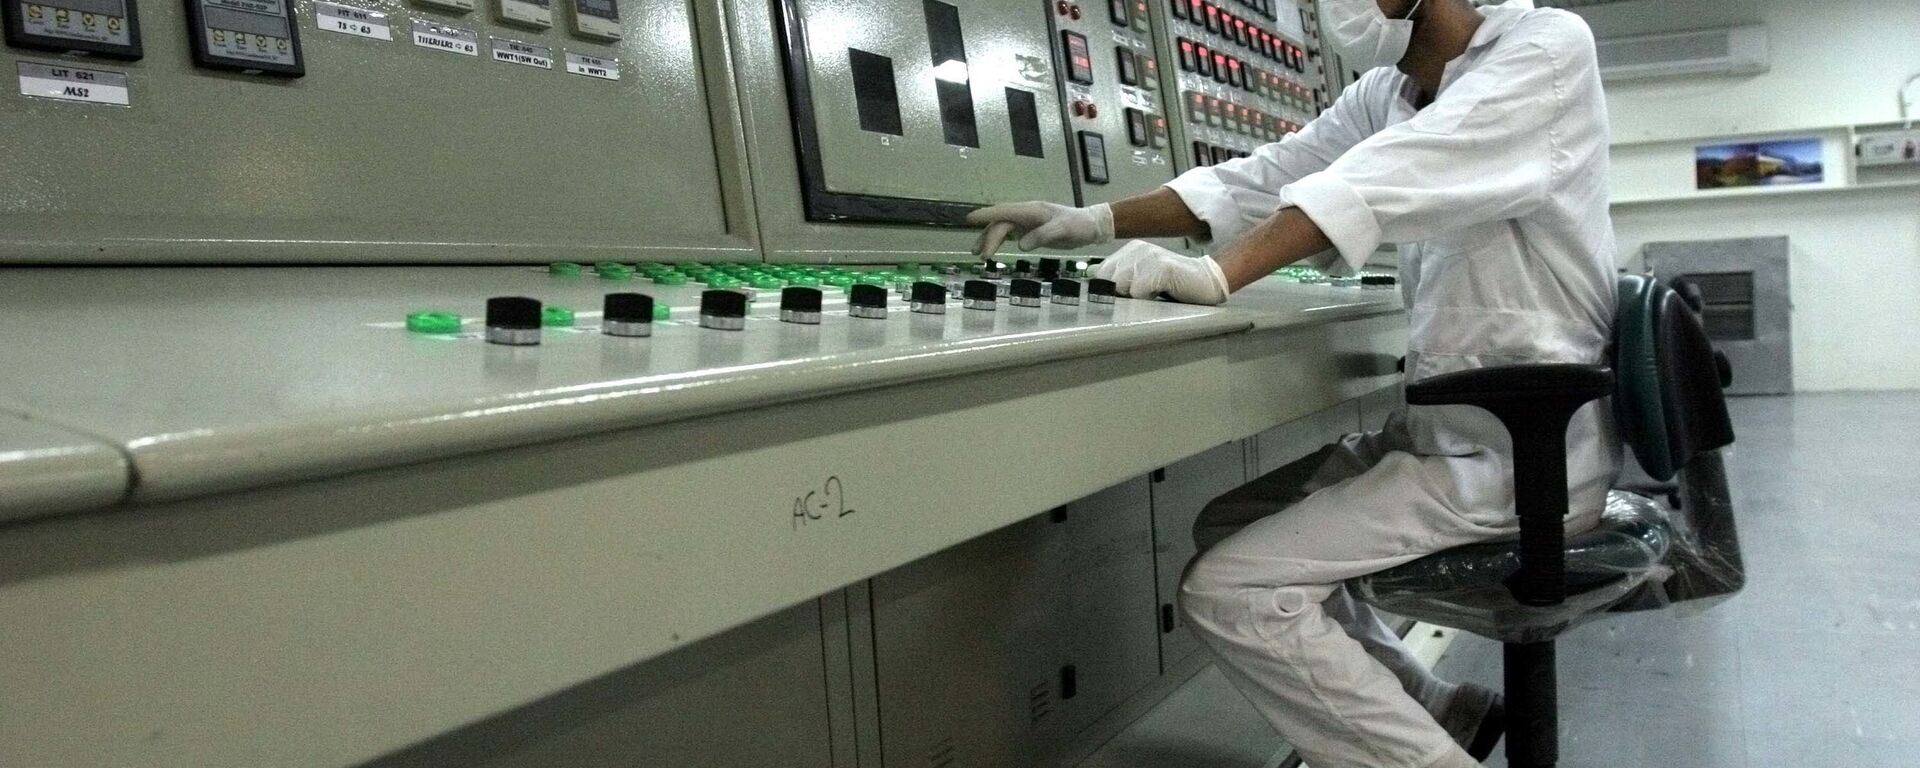 Kỹ thuật viên Iran làm việc tại nhà máy chế biến uranium - Sputnik Việt Nam, 1920, 06.04.2021